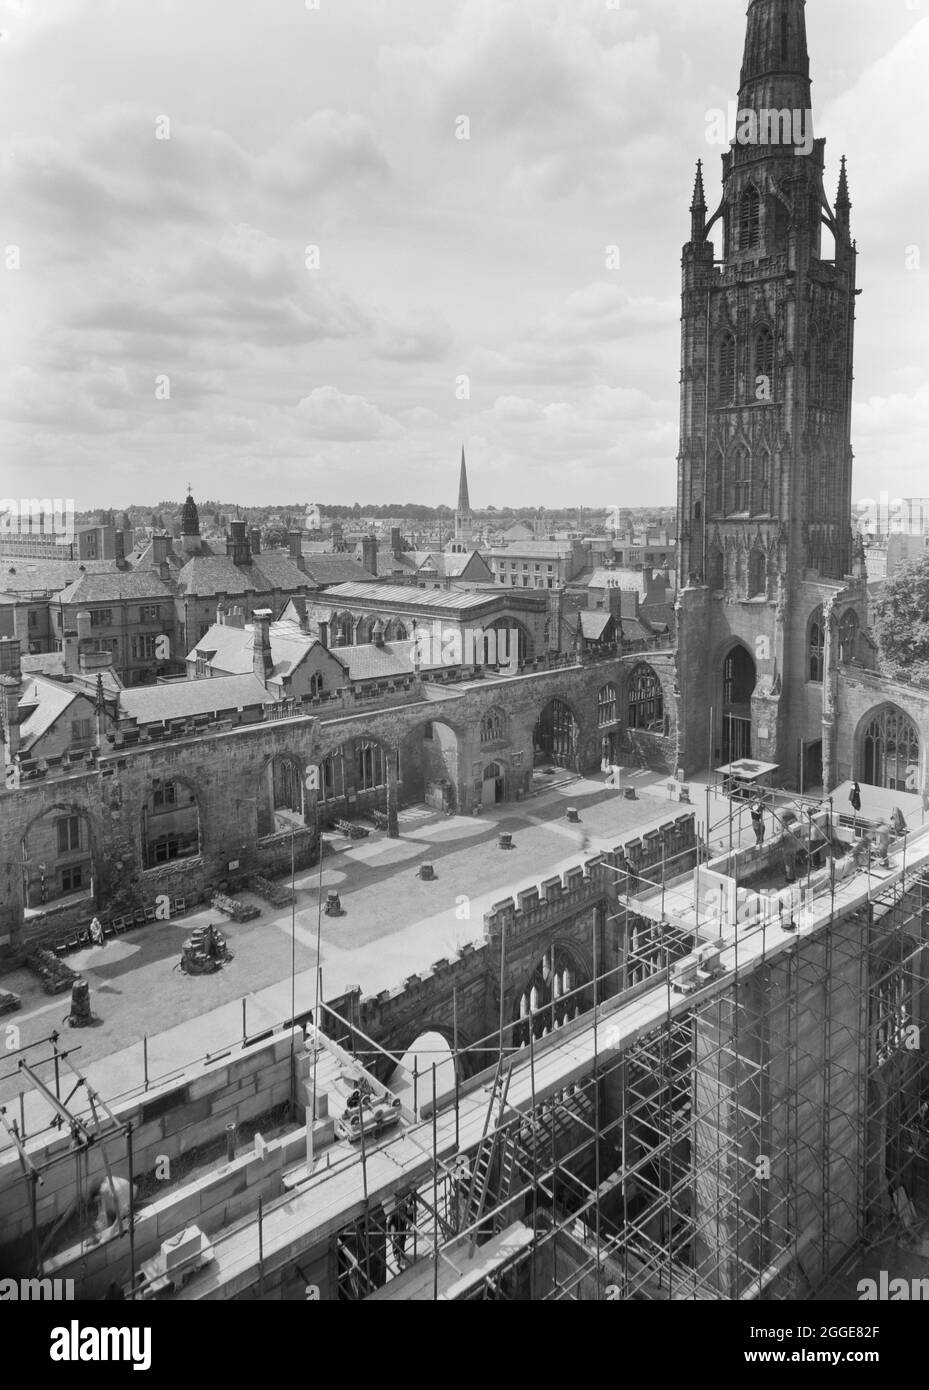 Una vista a sud-ovest sulle rovine della Chiesa Cattedrale di San Michele dal tetto della nuova Cattedrale di Coventry, che mostra parte del cantiere in primo piano adiacente alla vecchia cattedrale. Dopo il bombardamento della Cattedrale di Coventry nel novembre 1940, nel 1950 è stato lanciato un concorso per trovare un progetto per una nuova cattedrale. Il progetto vincente è stato di Sir Basil Spence (1907-1976) da uno degli oltre 200 disegni presentati. Tra la metà degli anni '50 e il 1962 si svolsero lavori di costruzione. La regina Elisabetta II pose la pietra di fondazione il 23 marzo 1956. Foto Stock